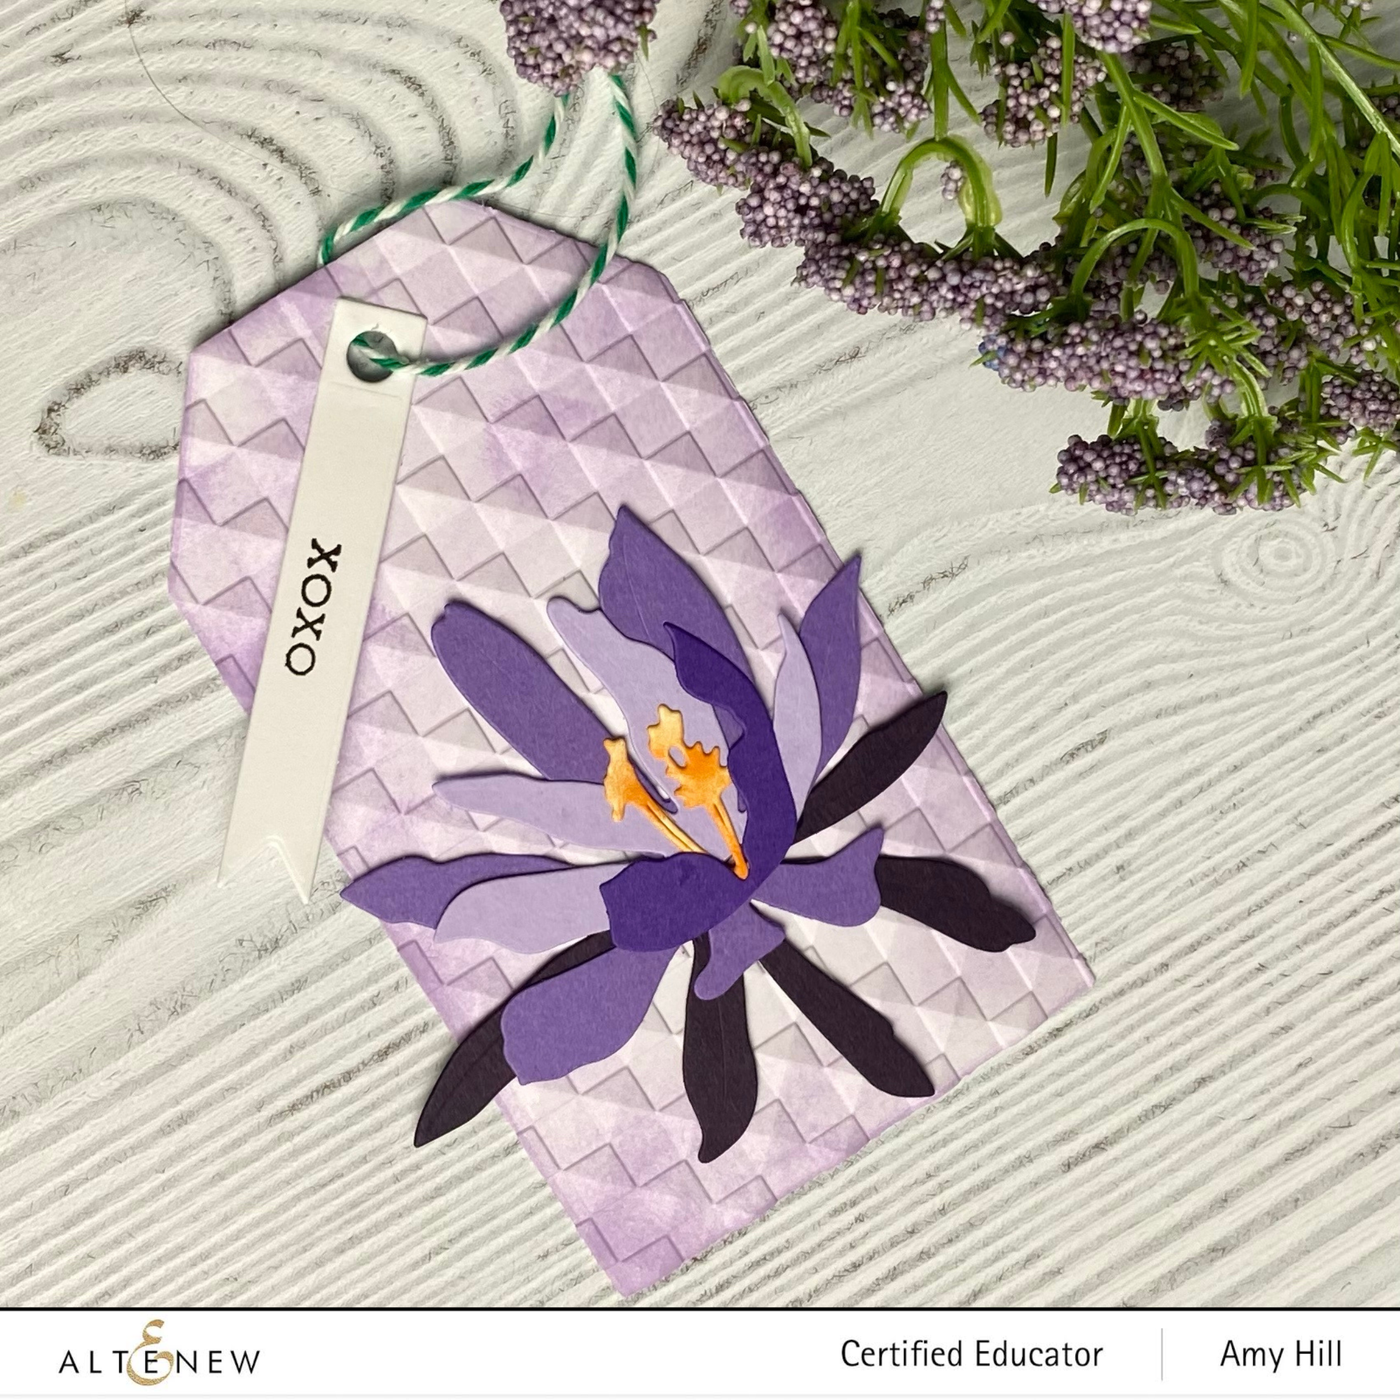 Dies Craft-A-Flower: Epiphyllum Layering Die Set